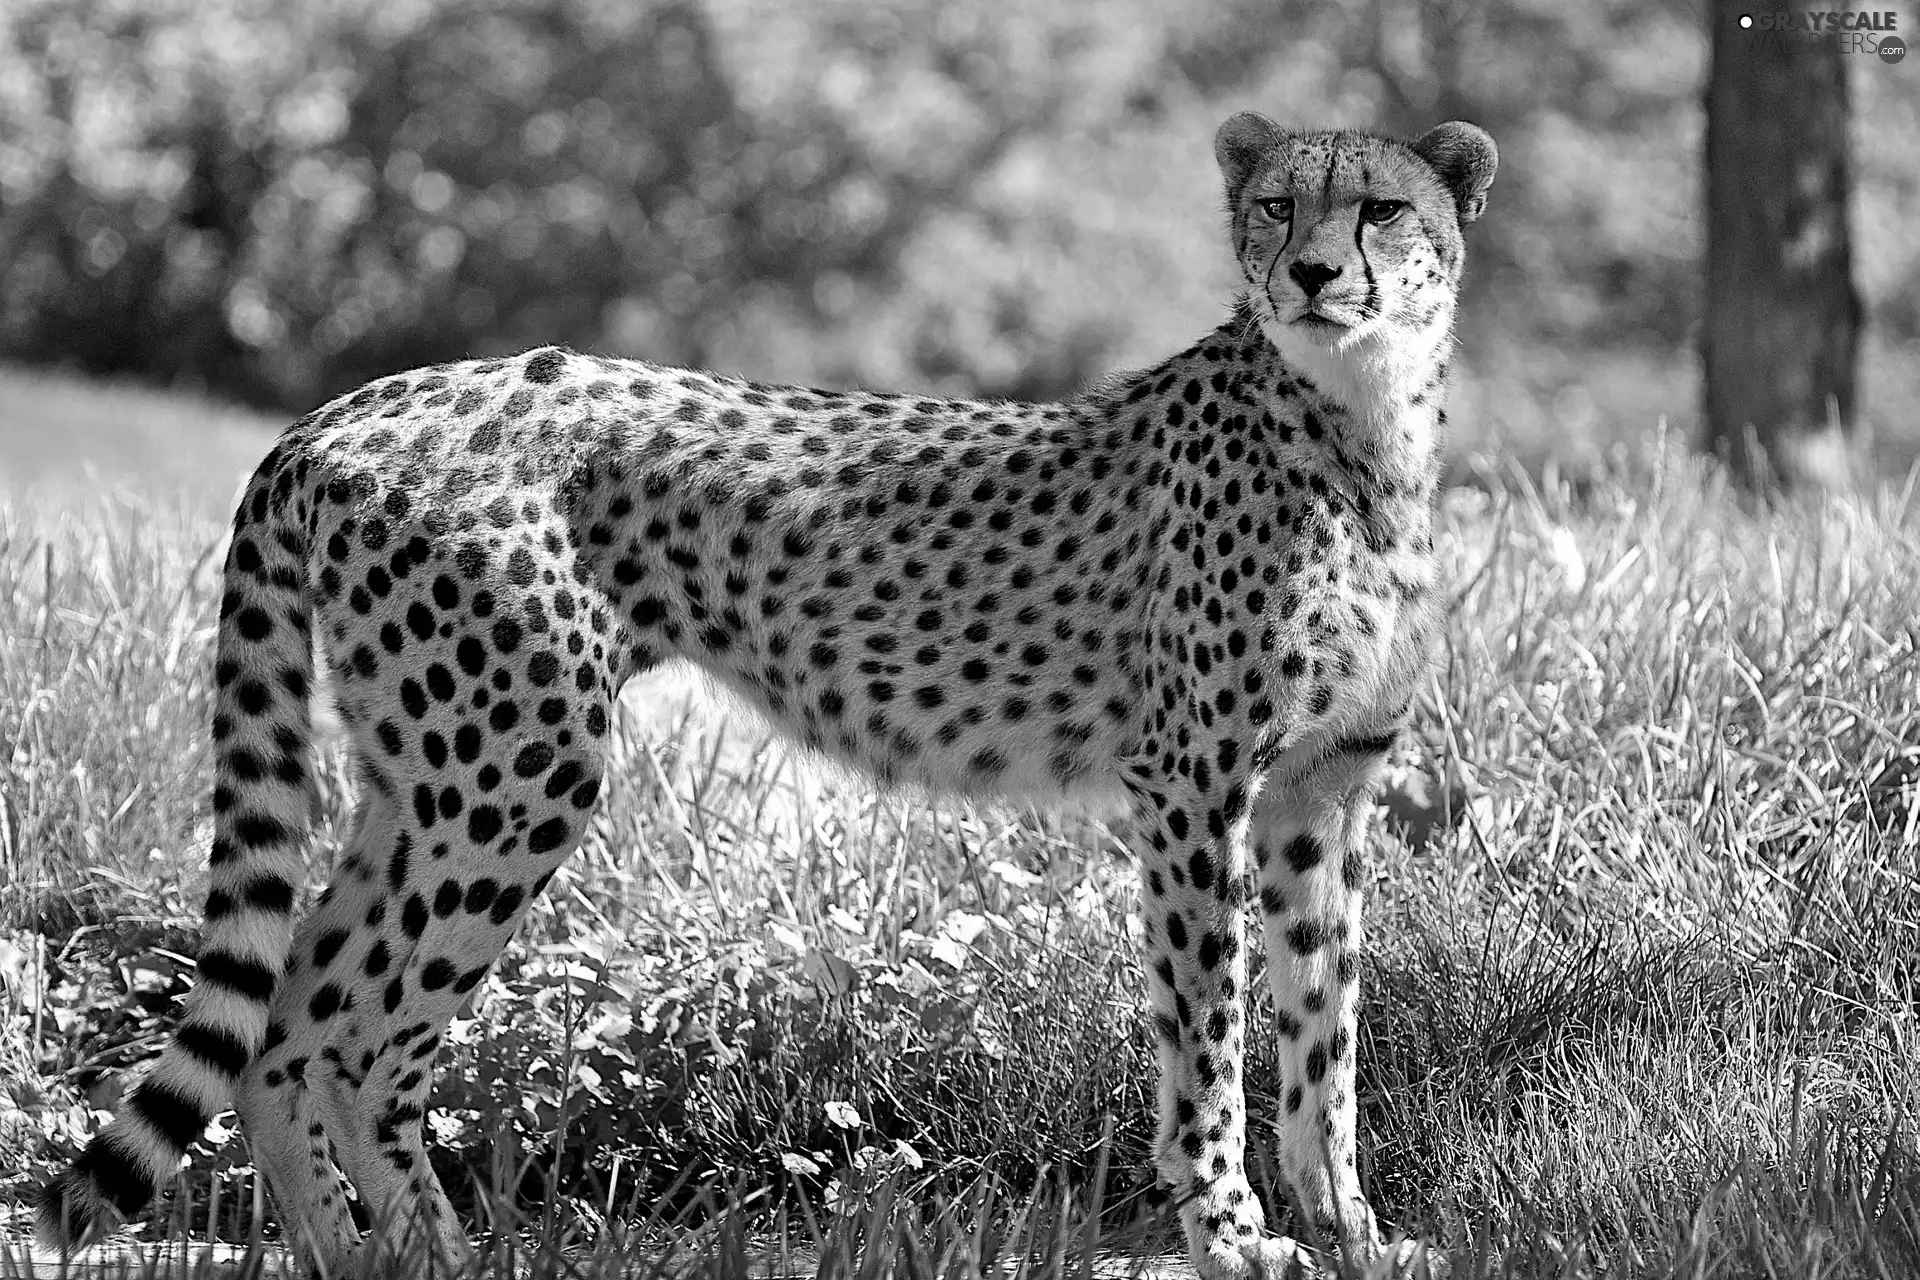 green, Cheetah, spots